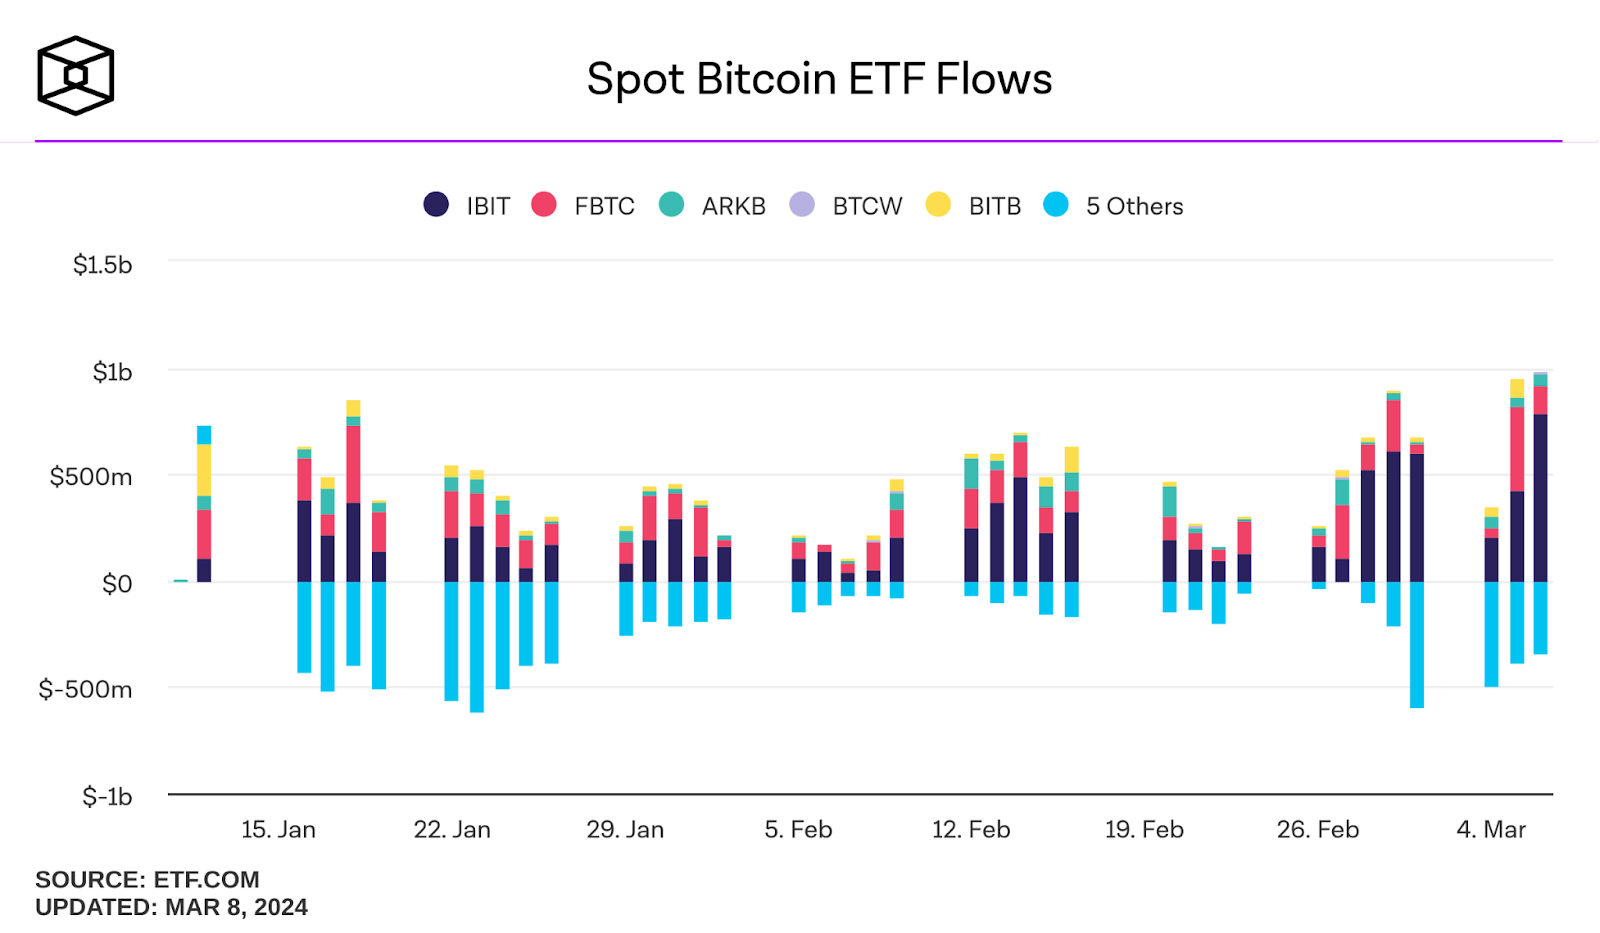 Spot Bitcoin ETF Flow